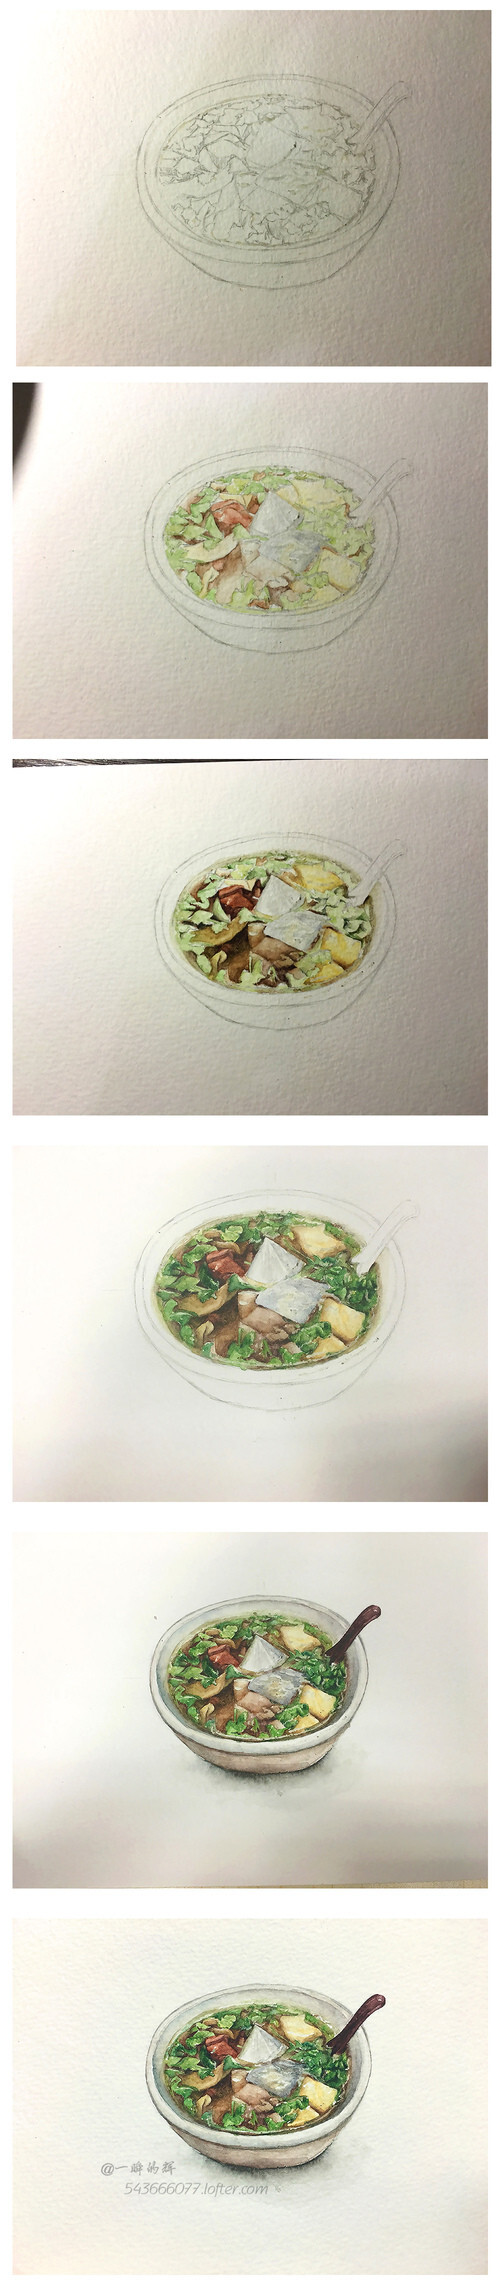 【鸭血粉丝汤】【画手:一瞬的辉】食物 饮料 贴纸 手账 字体 原稿